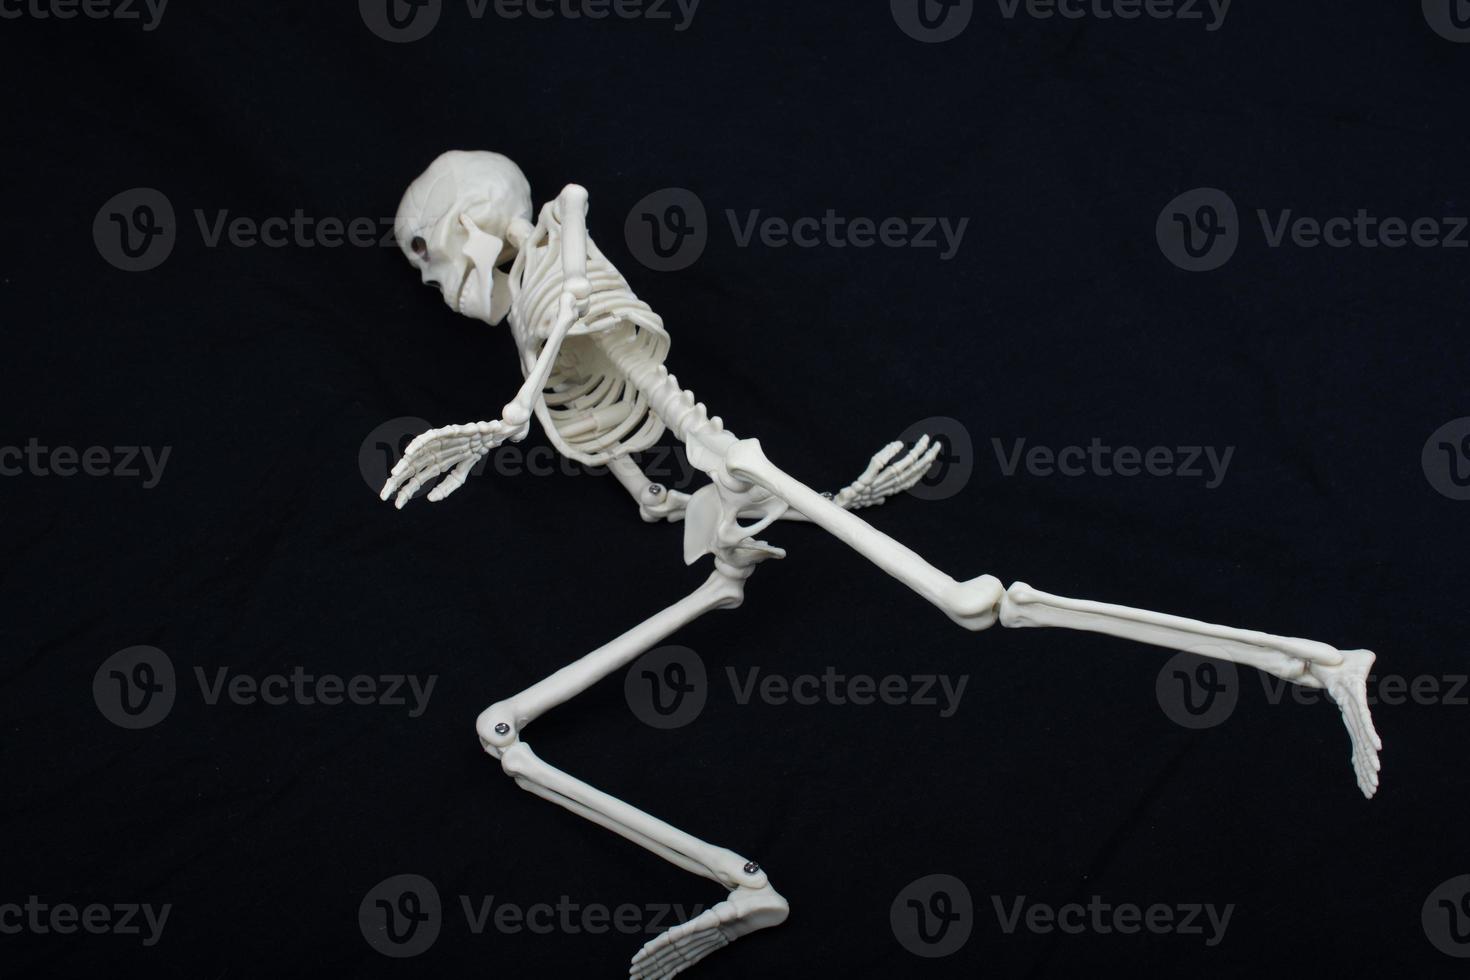 modèle de squelette humain posant pour la science de l'anatomie médicale photo